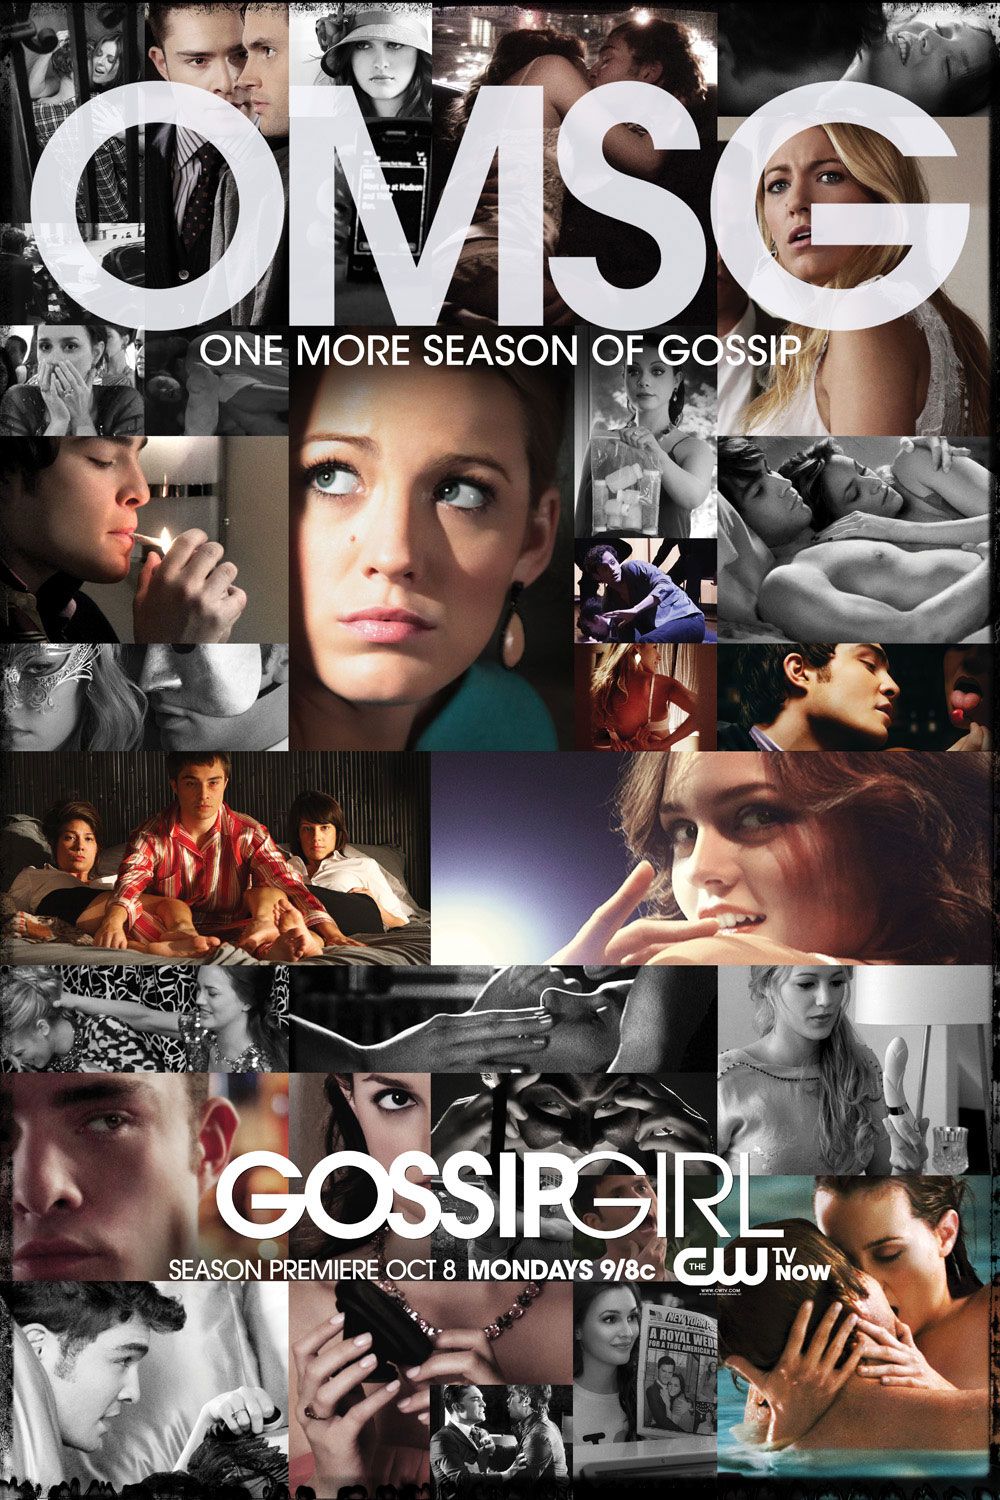 Gossip Girl' Posters, Gossip Girl